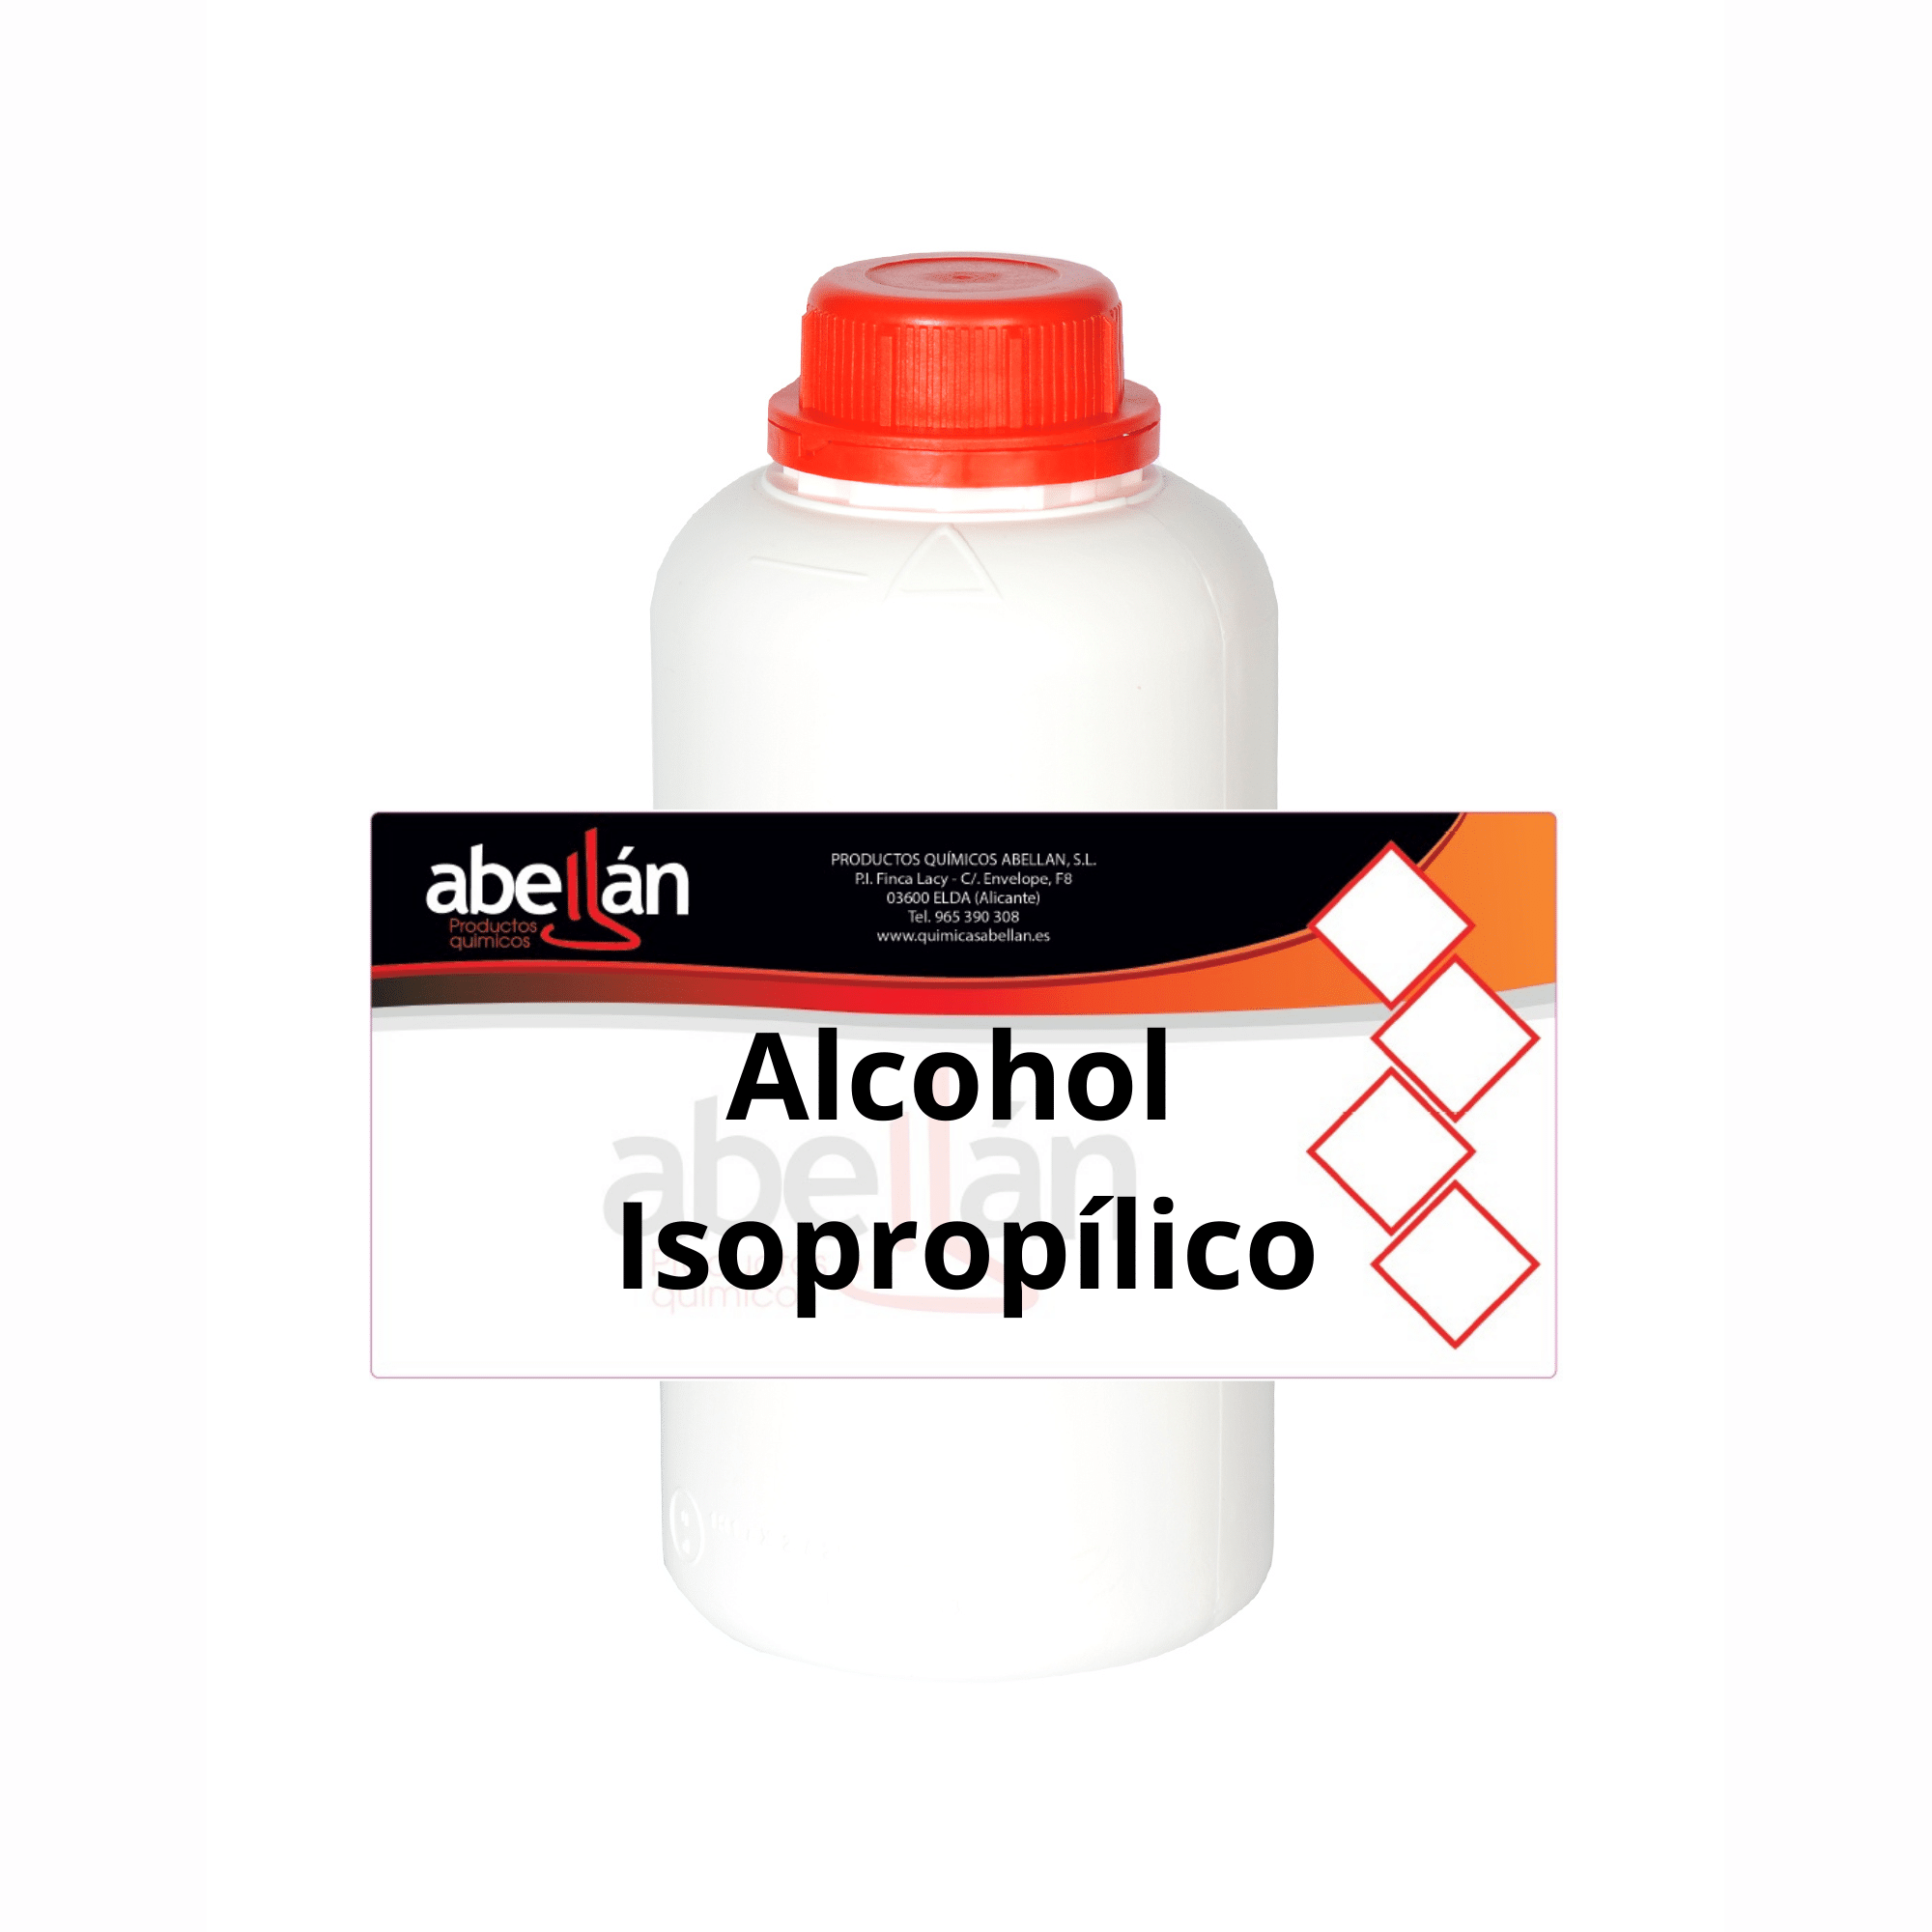 Importancia del alcohol isopropílico